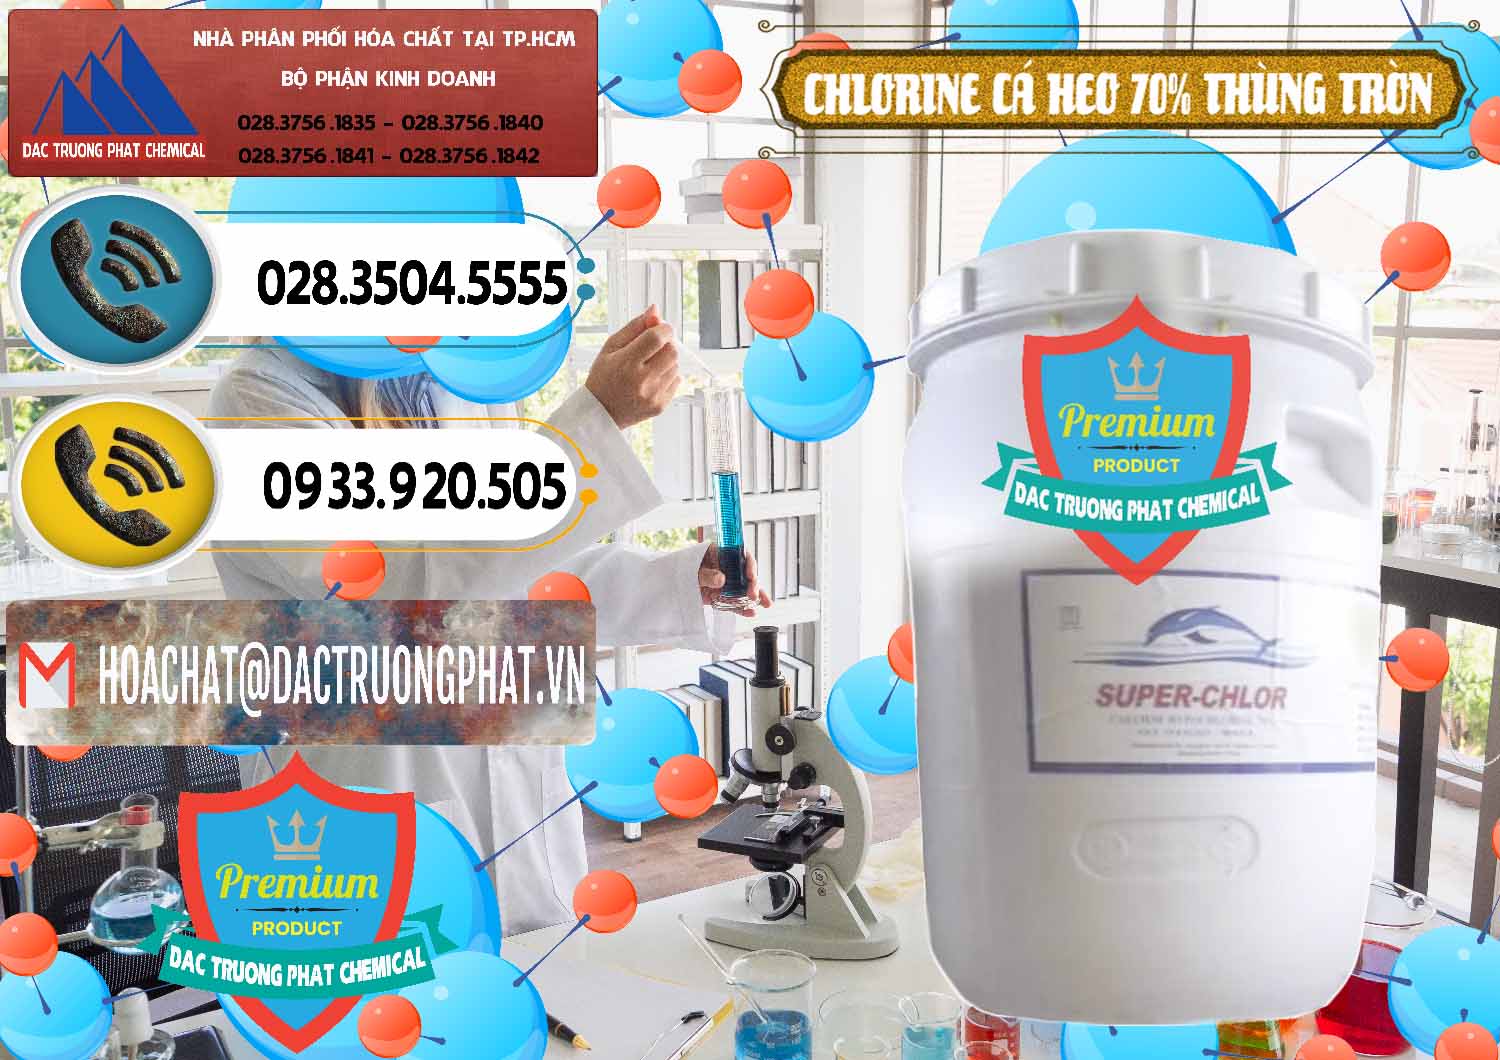 Công ty chuyên kinh doanh _ bán Clorin - Chlorine Cá Heo 70% Super Chlor Thùng Tròn Nắp Trắng Trung Quốc China - 0239 - Đơn vị chuyên nhập khẩu _ phân phối hóa chất tại TP.HCM - hoachatdetnhuom.vn